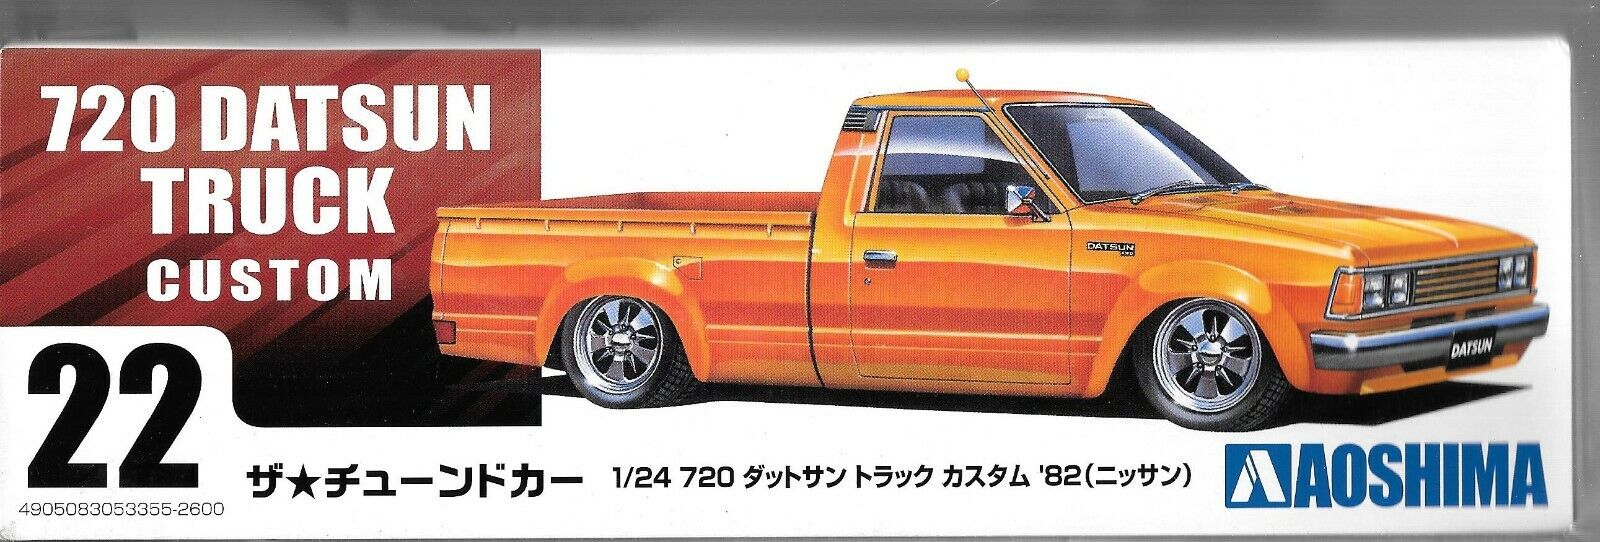 Aoshima Datsun Camion 720, Singolo Cabina Personalizzato 1/24 5355 St